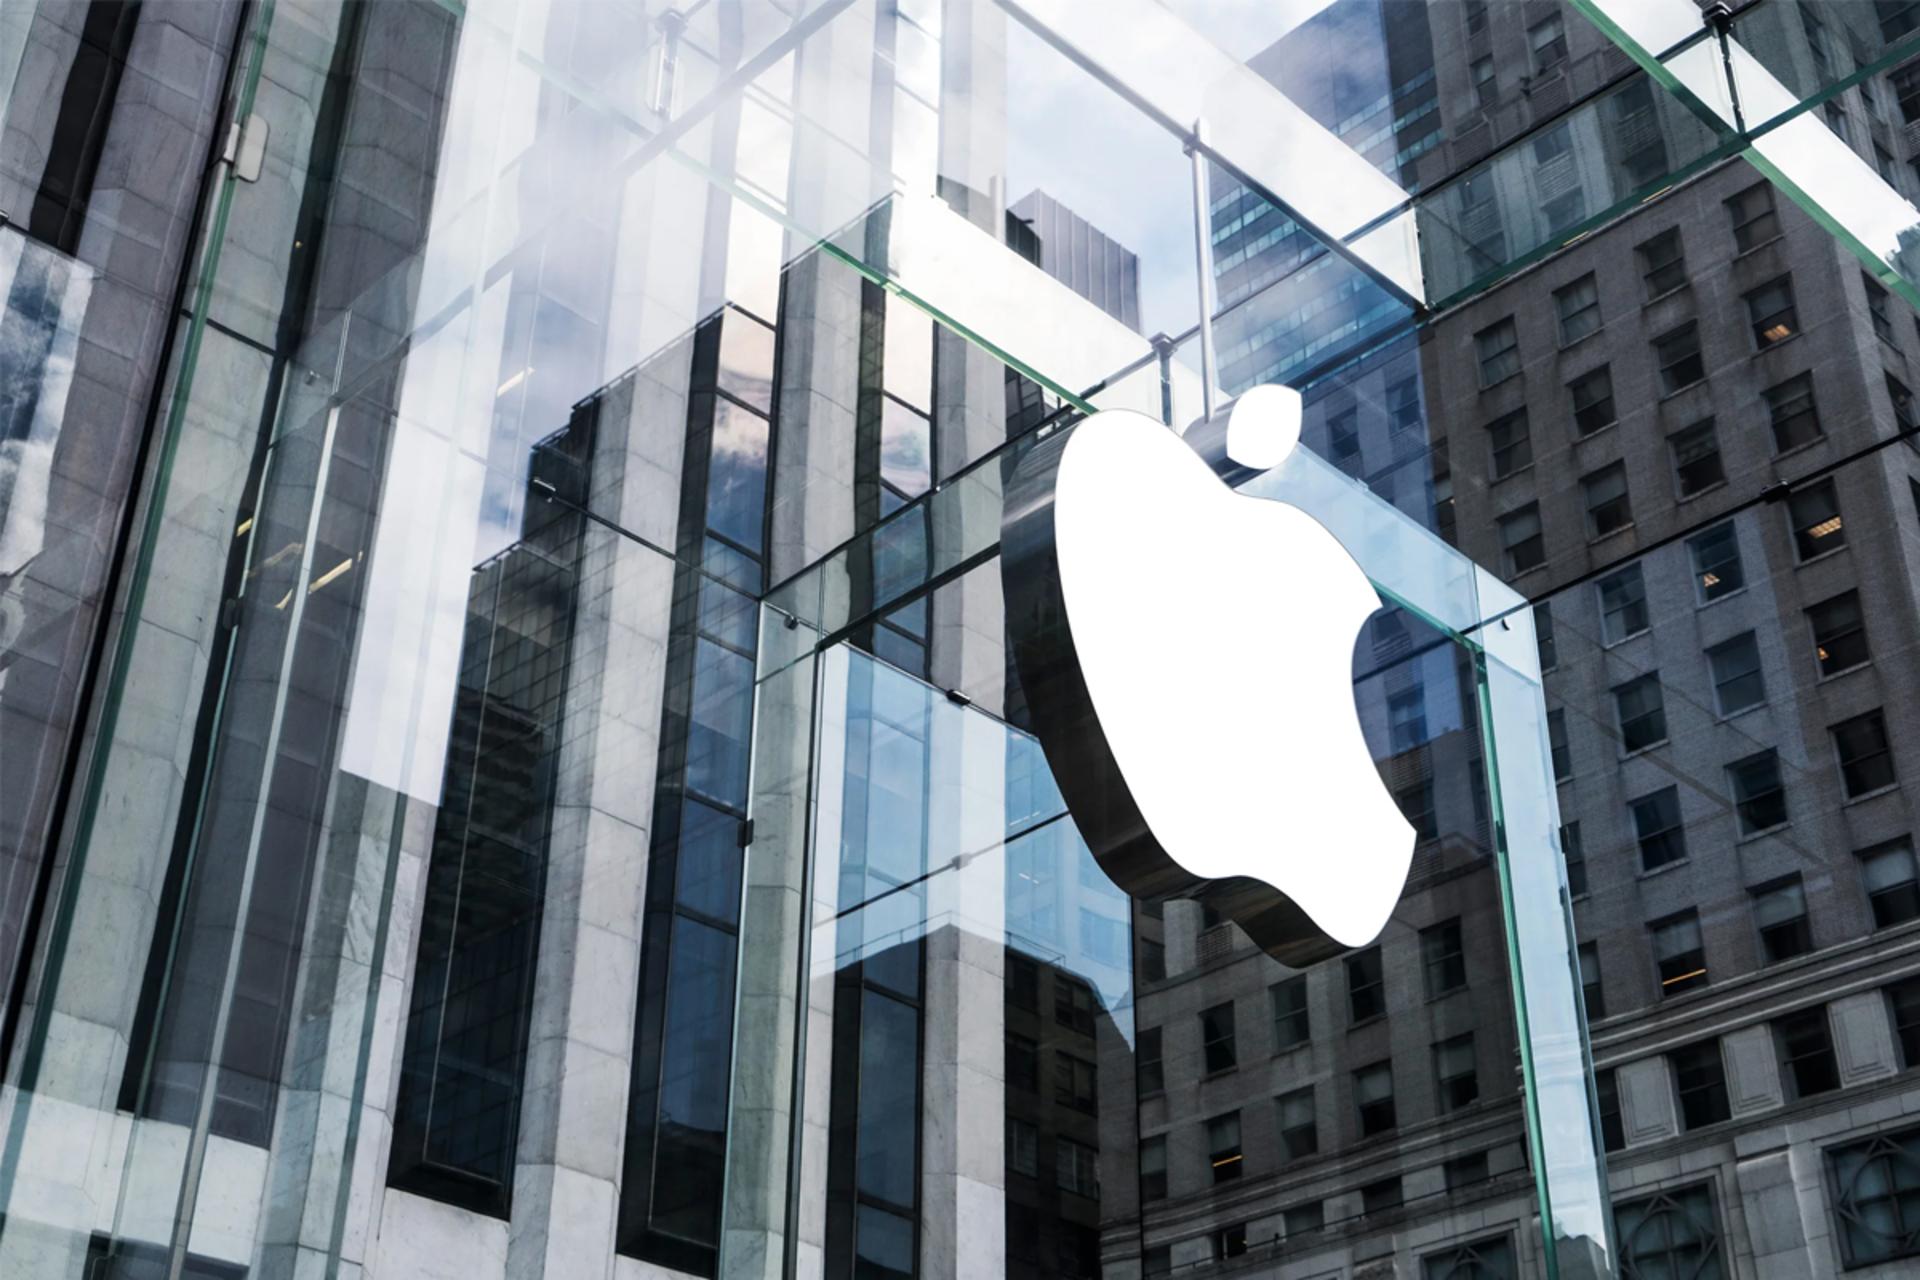 لوگو اپل / Apple در بیرون فروشگاه شیشه ای